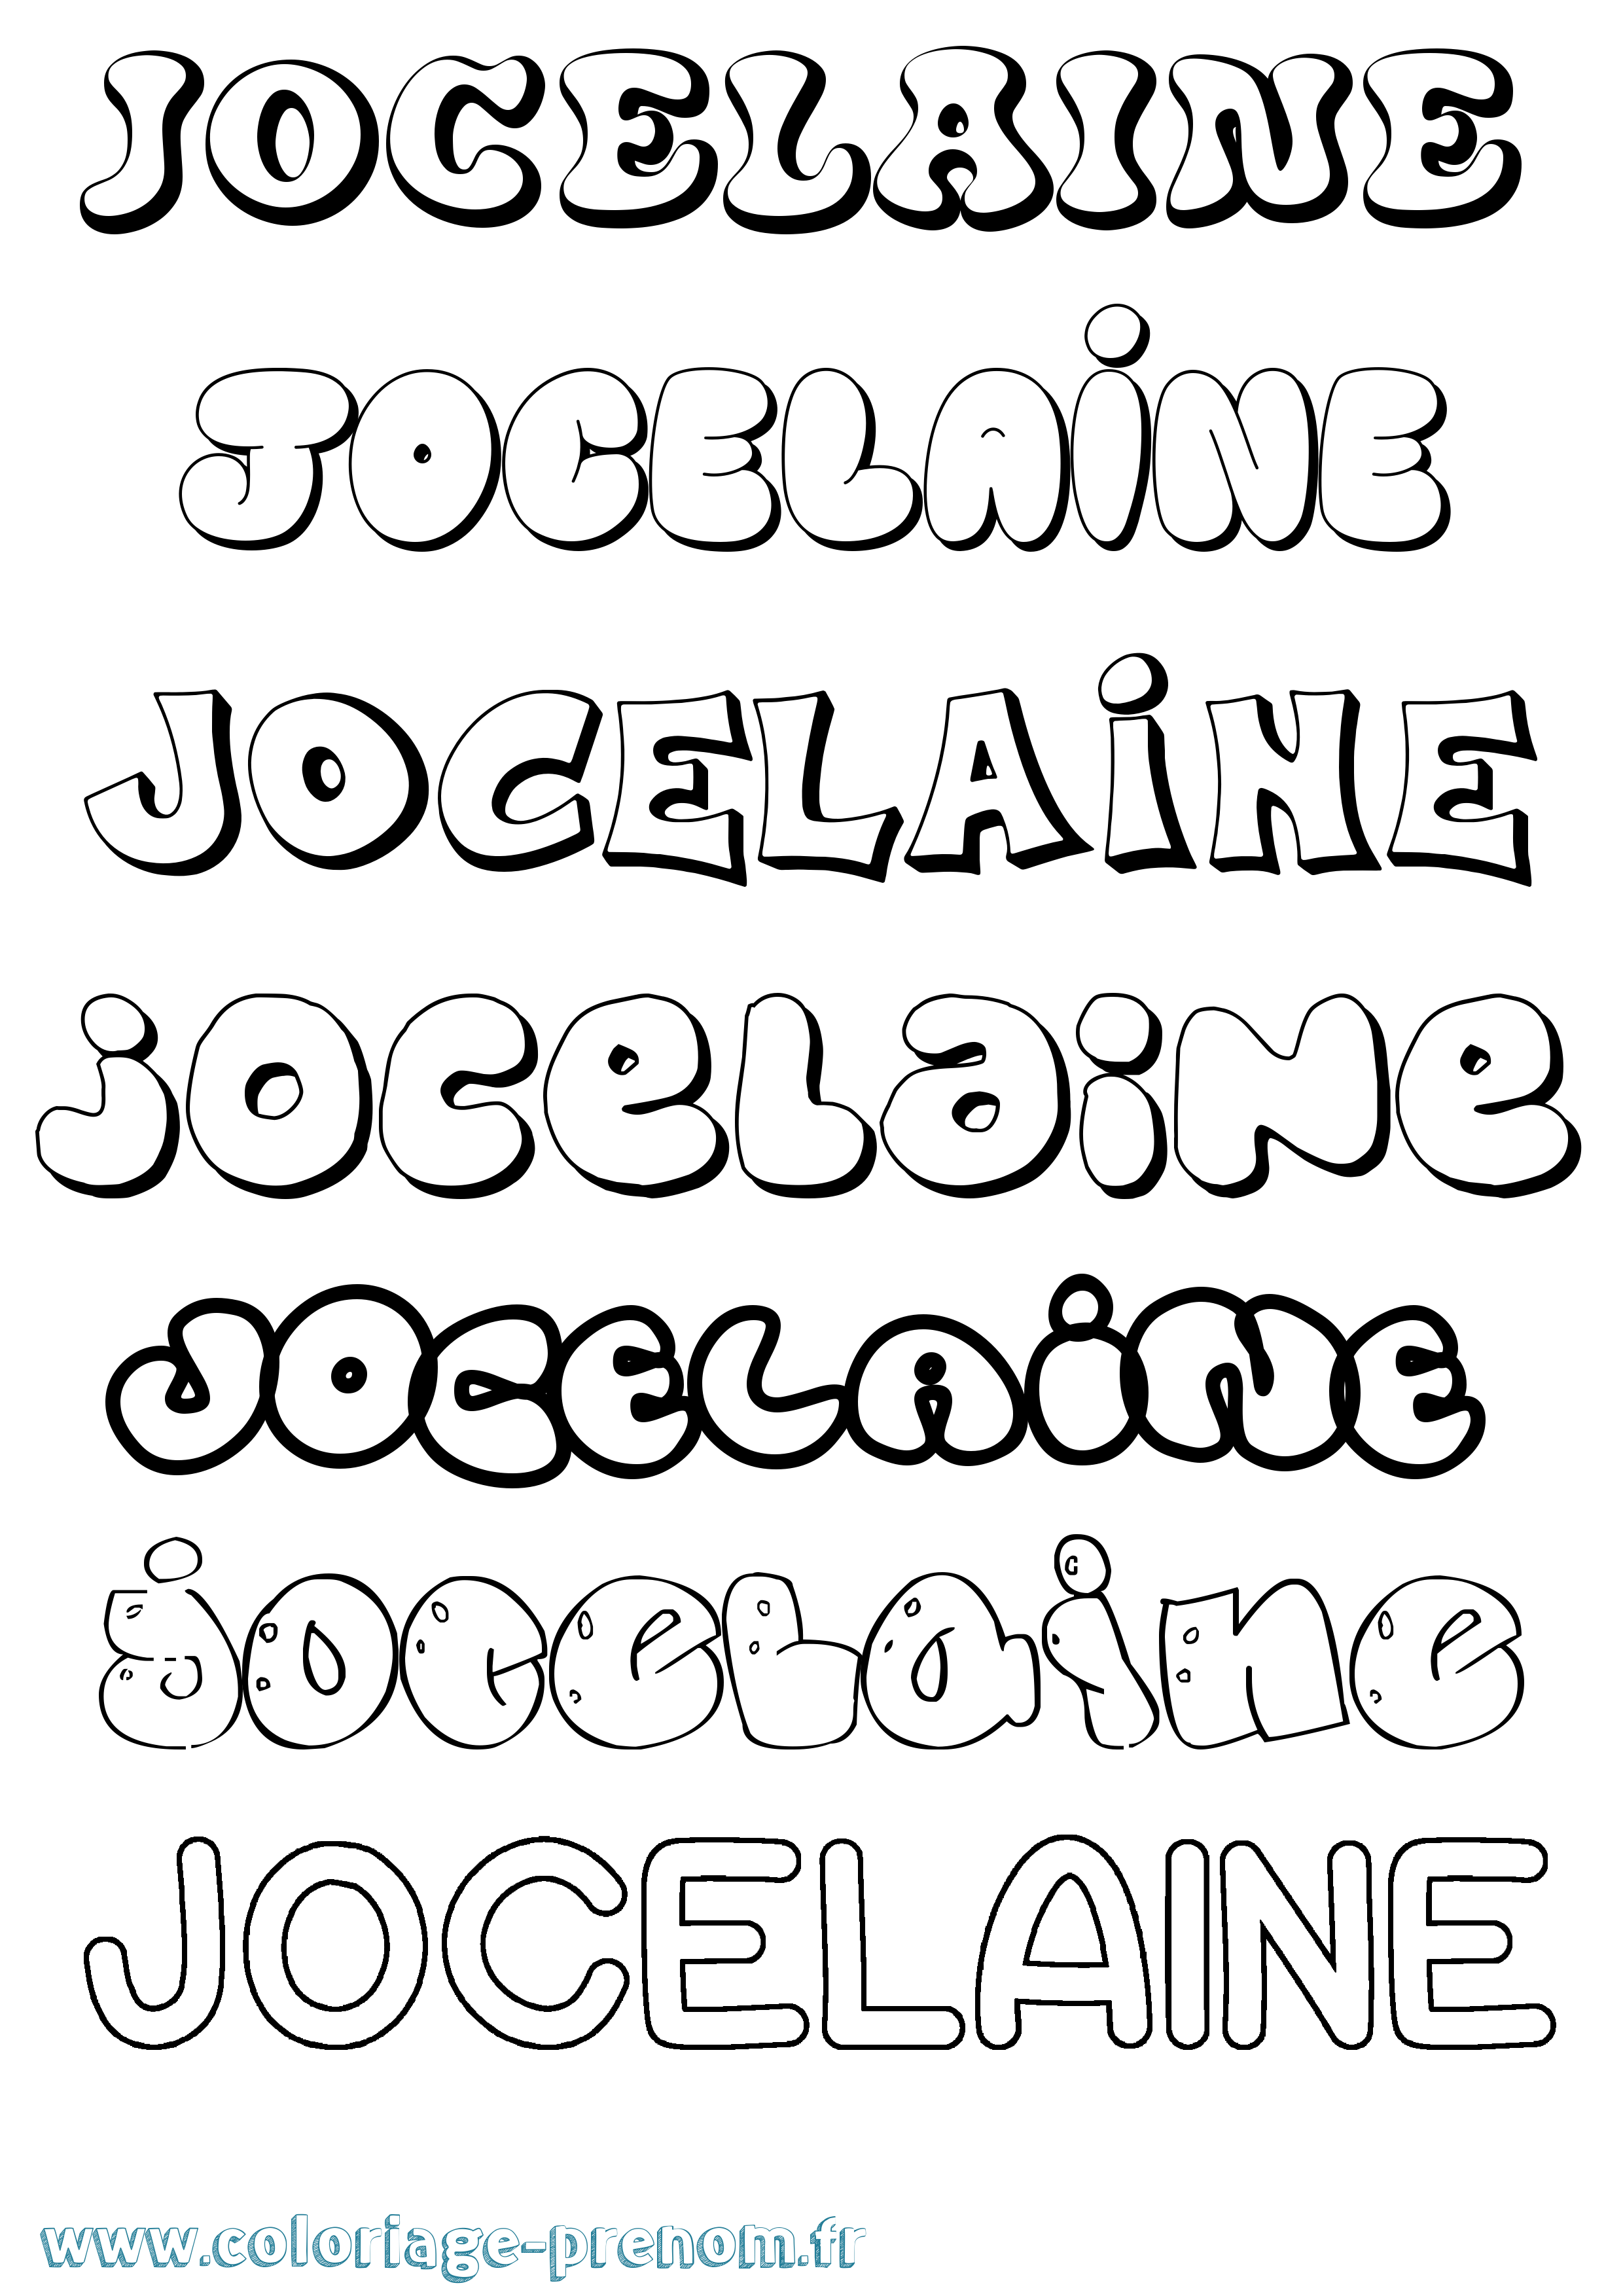 Coloriage prénom Jocelaine Bubble